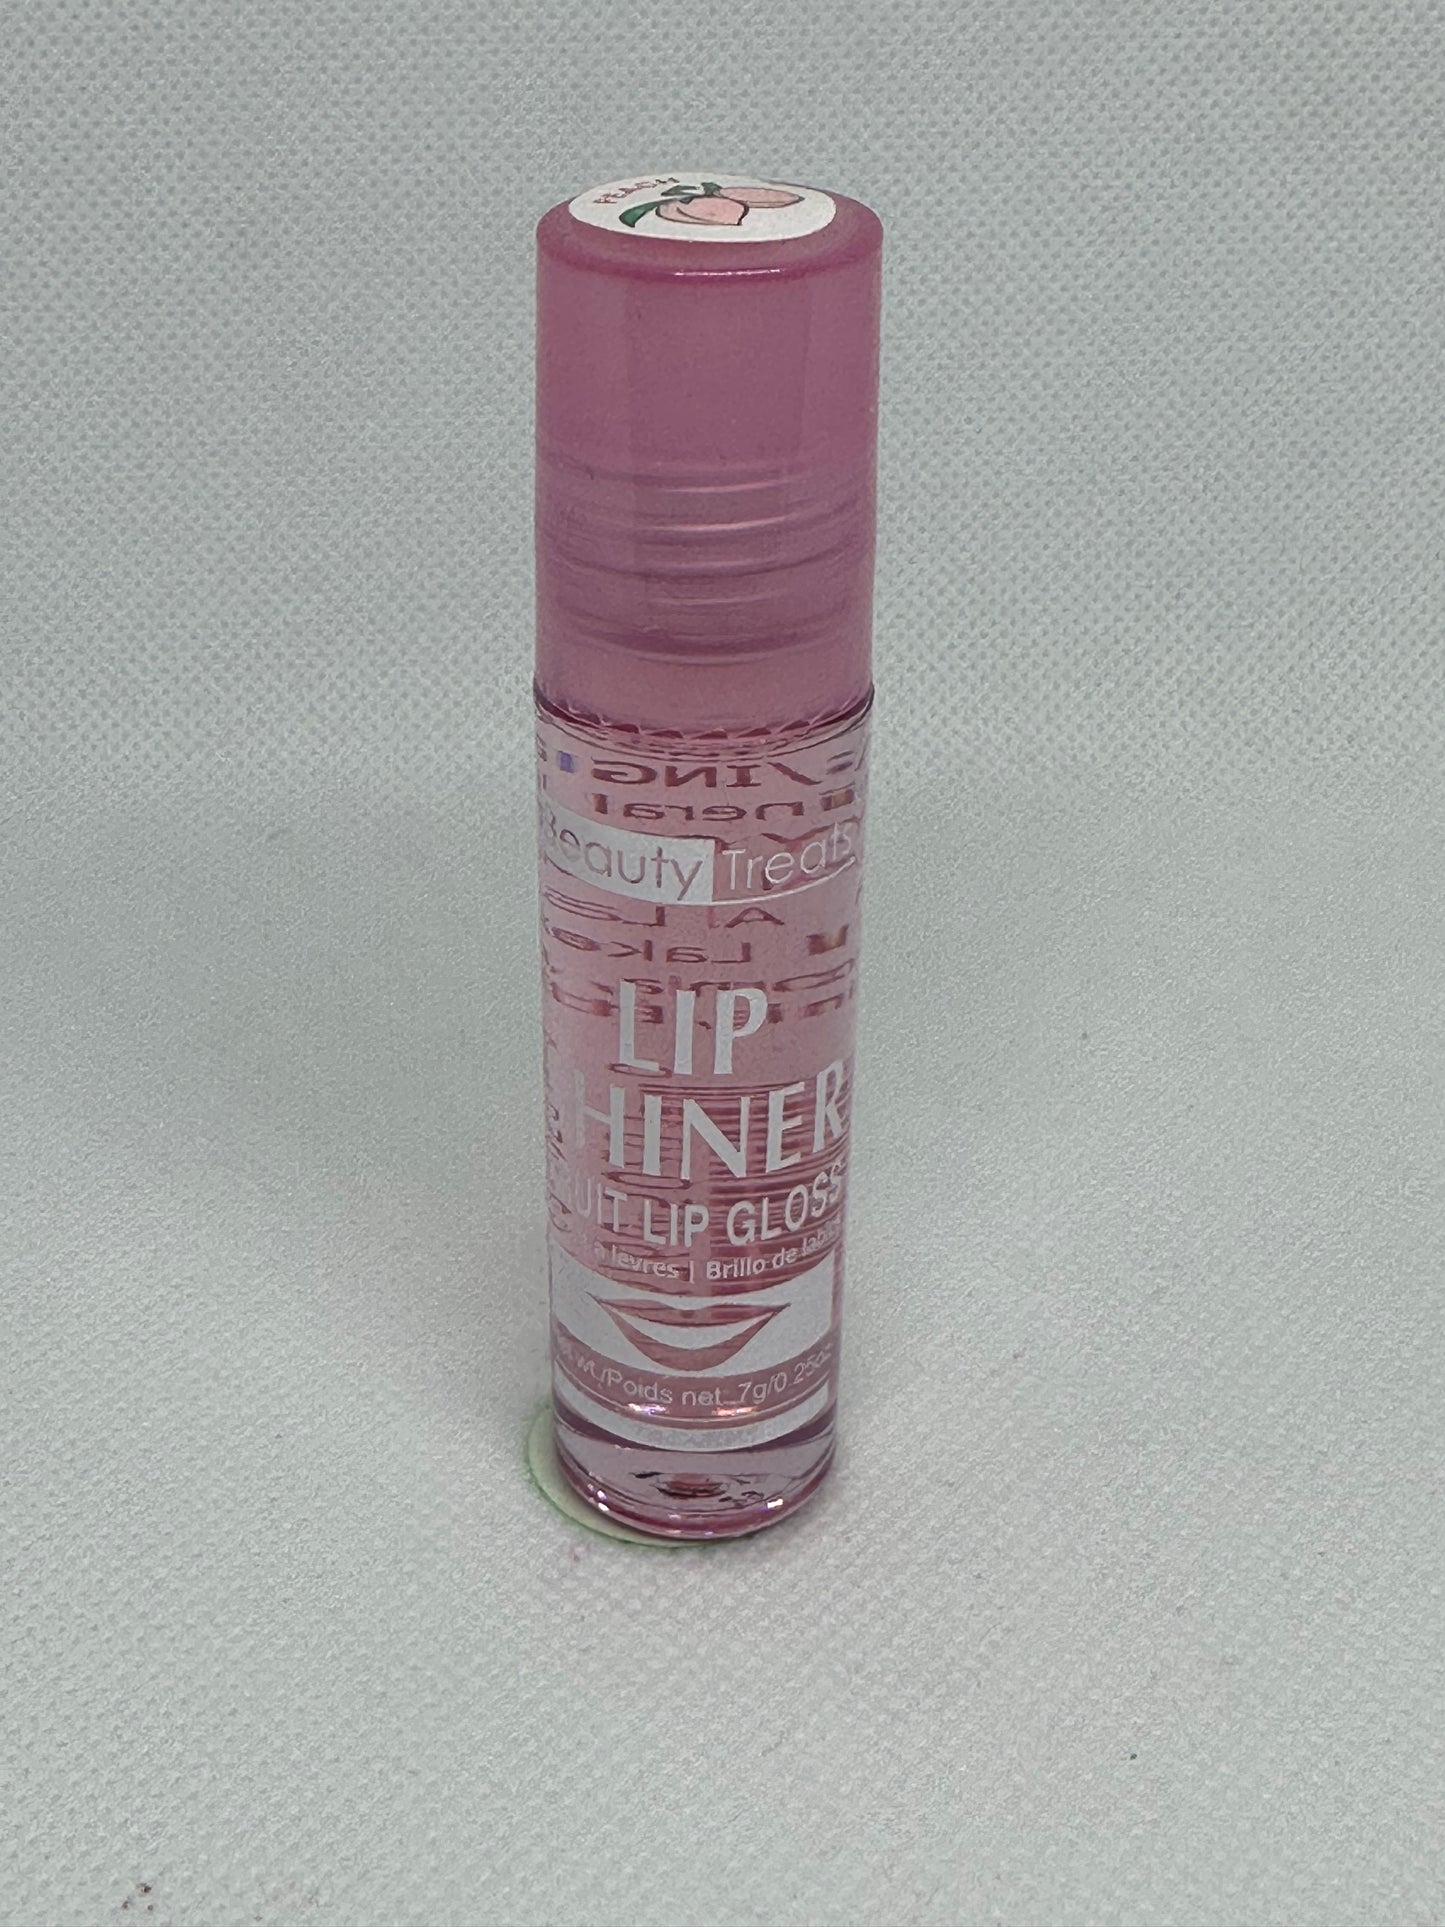 Lip Shiner(fruit Lip Gloss )